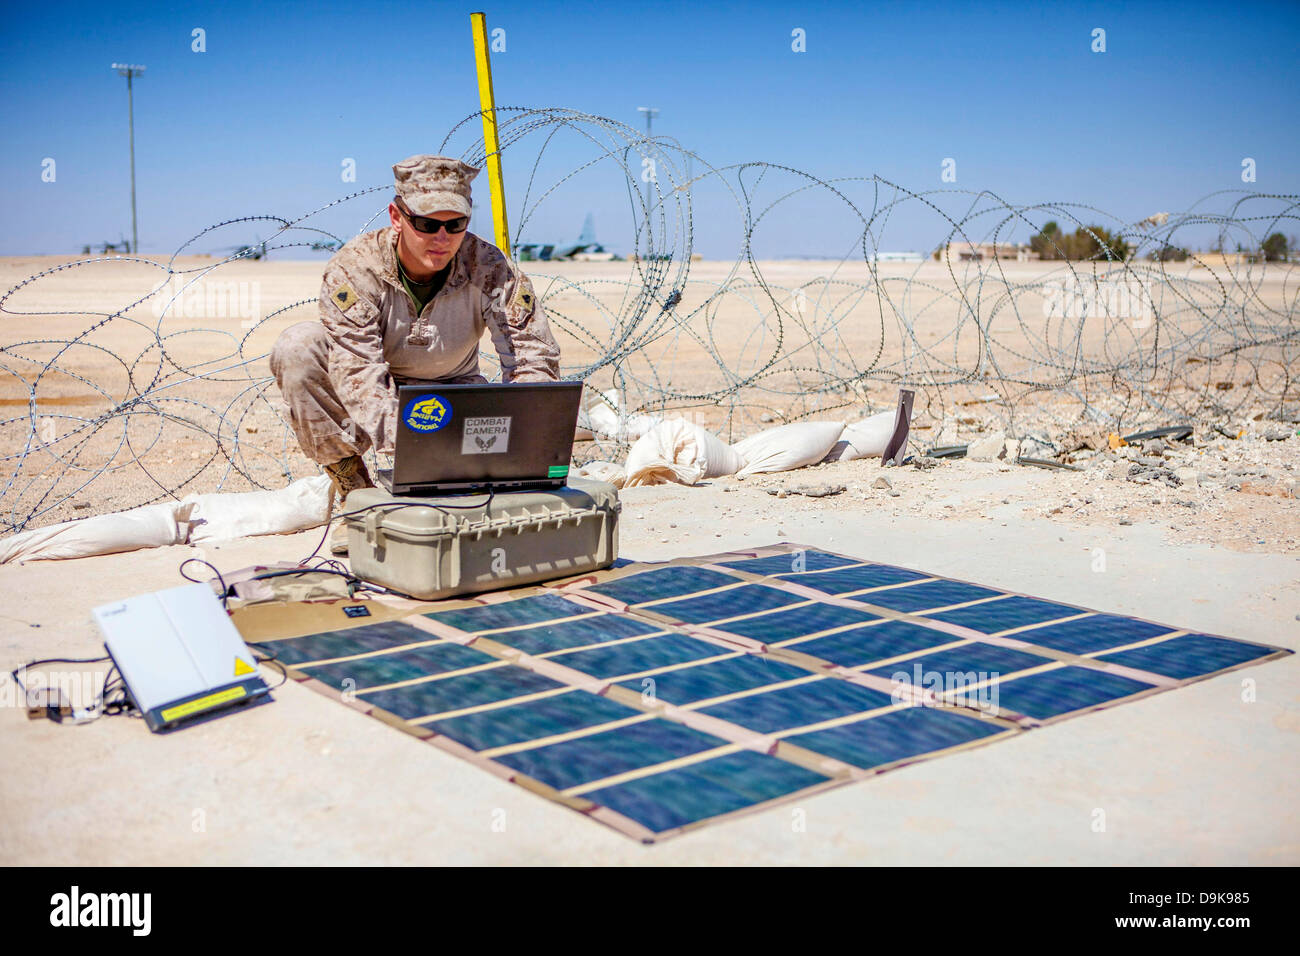 Marina de los EE.UU. P. fotógrafo Christopher Stone transmite fotos mediante una red de área global de banda ancha por satélite propulsado por un teléfono portátil Solar sistema energético de comunicación alternativa, 18 de junio de 2013 al Rey Faisal Base Aérea en Jordania. Foto de stock